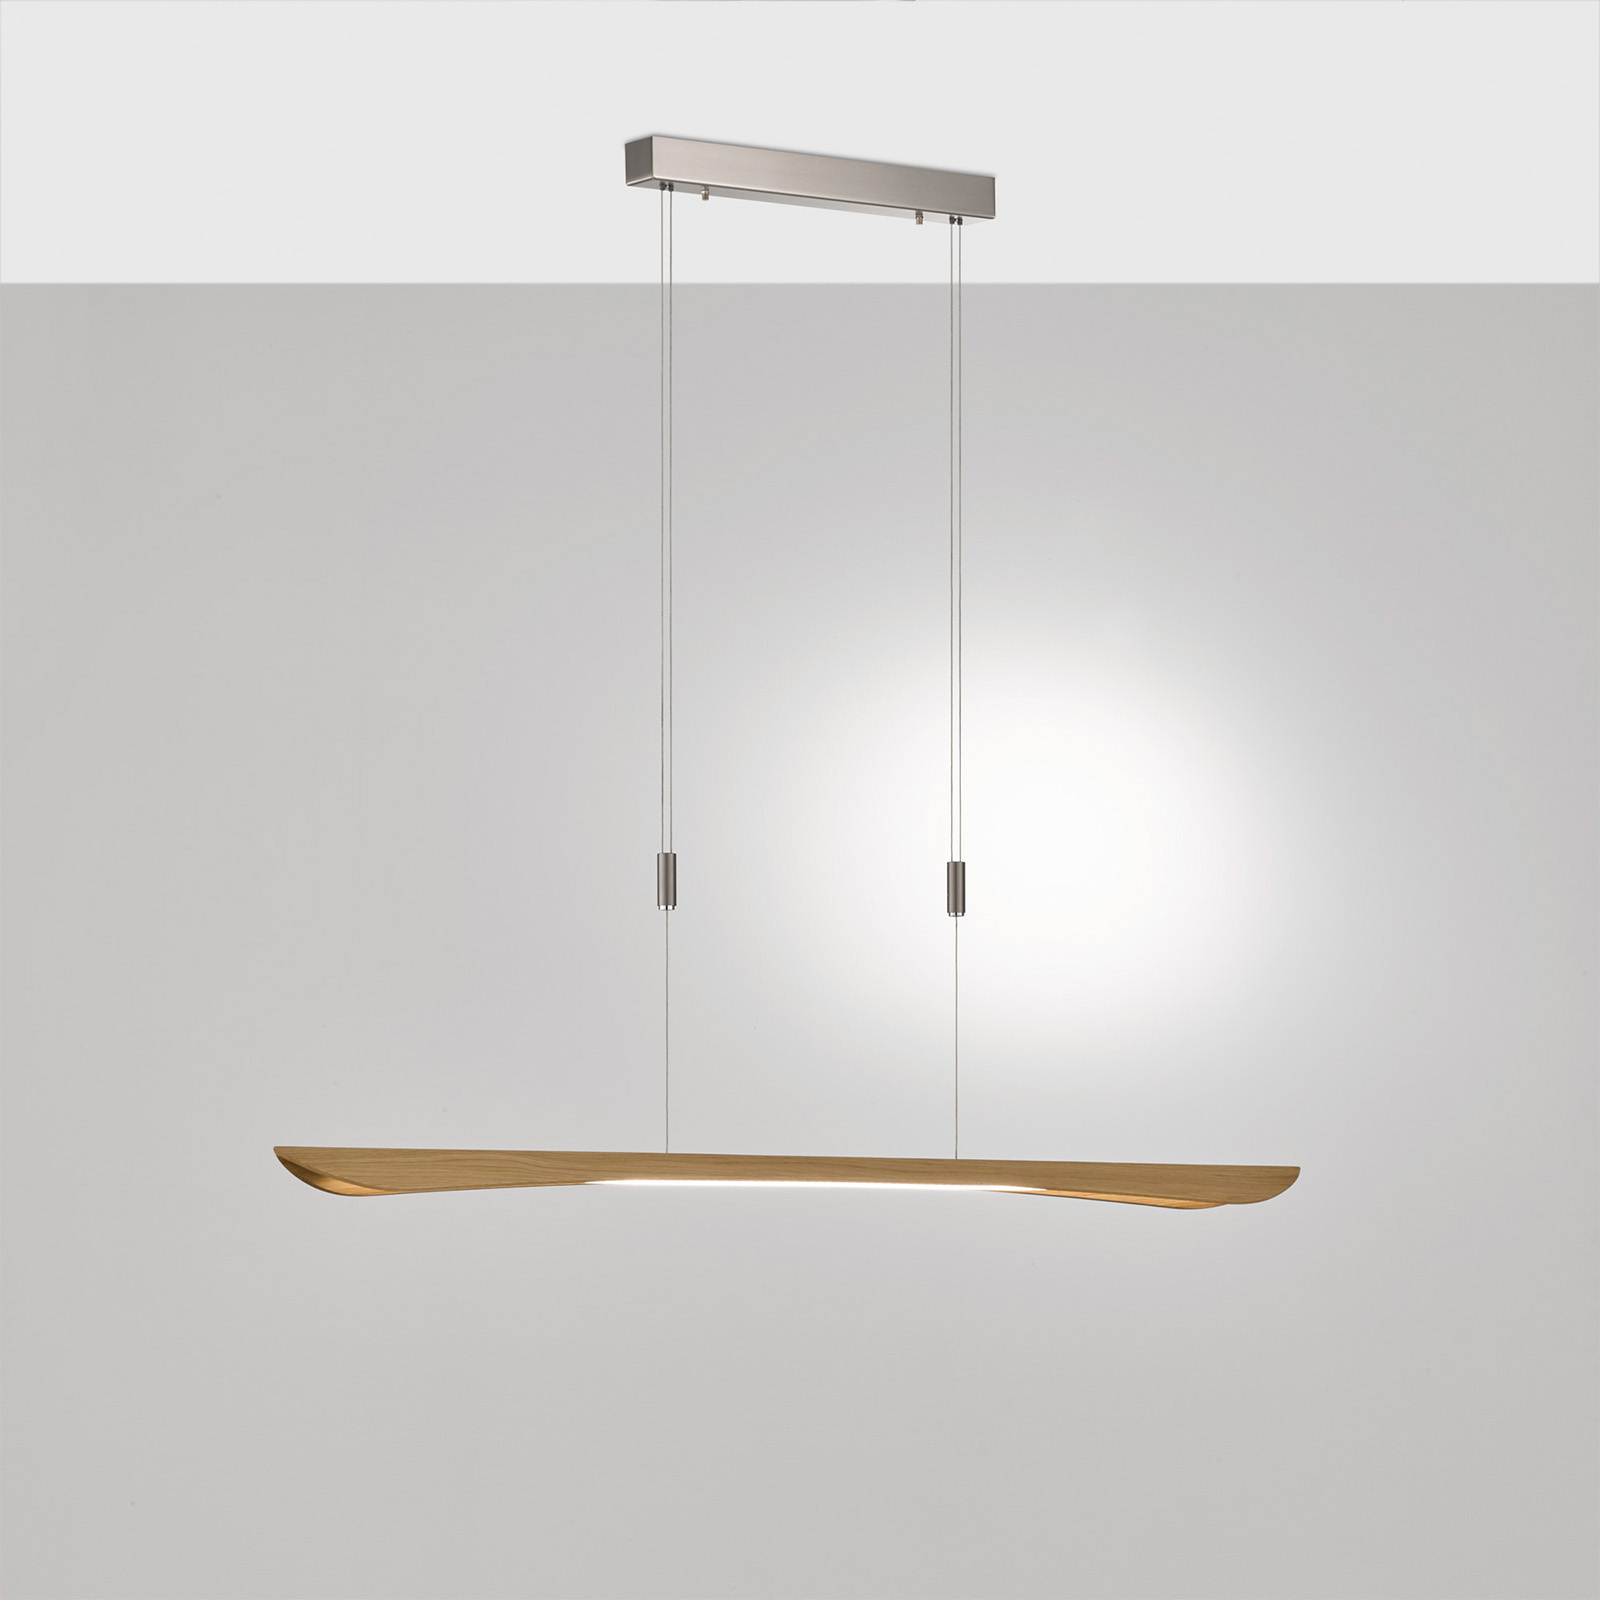 Rothfels Hiba LED hanglamp, eiken naturel, 148 cm